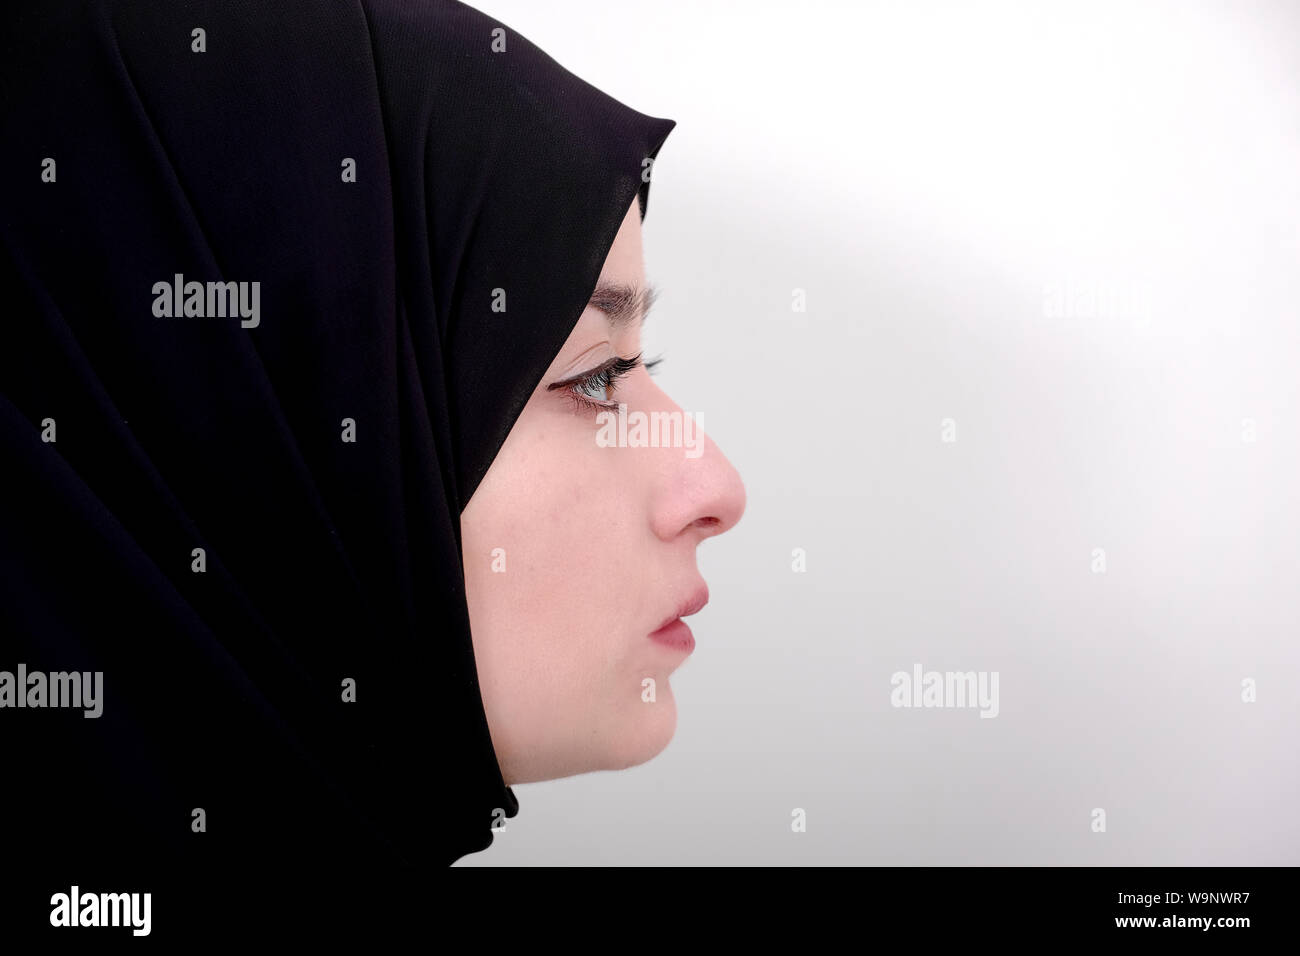 Photo de profil de femme musulmane, hijab, musulmane de porter le foulard ou le voile noir Banque D'Images